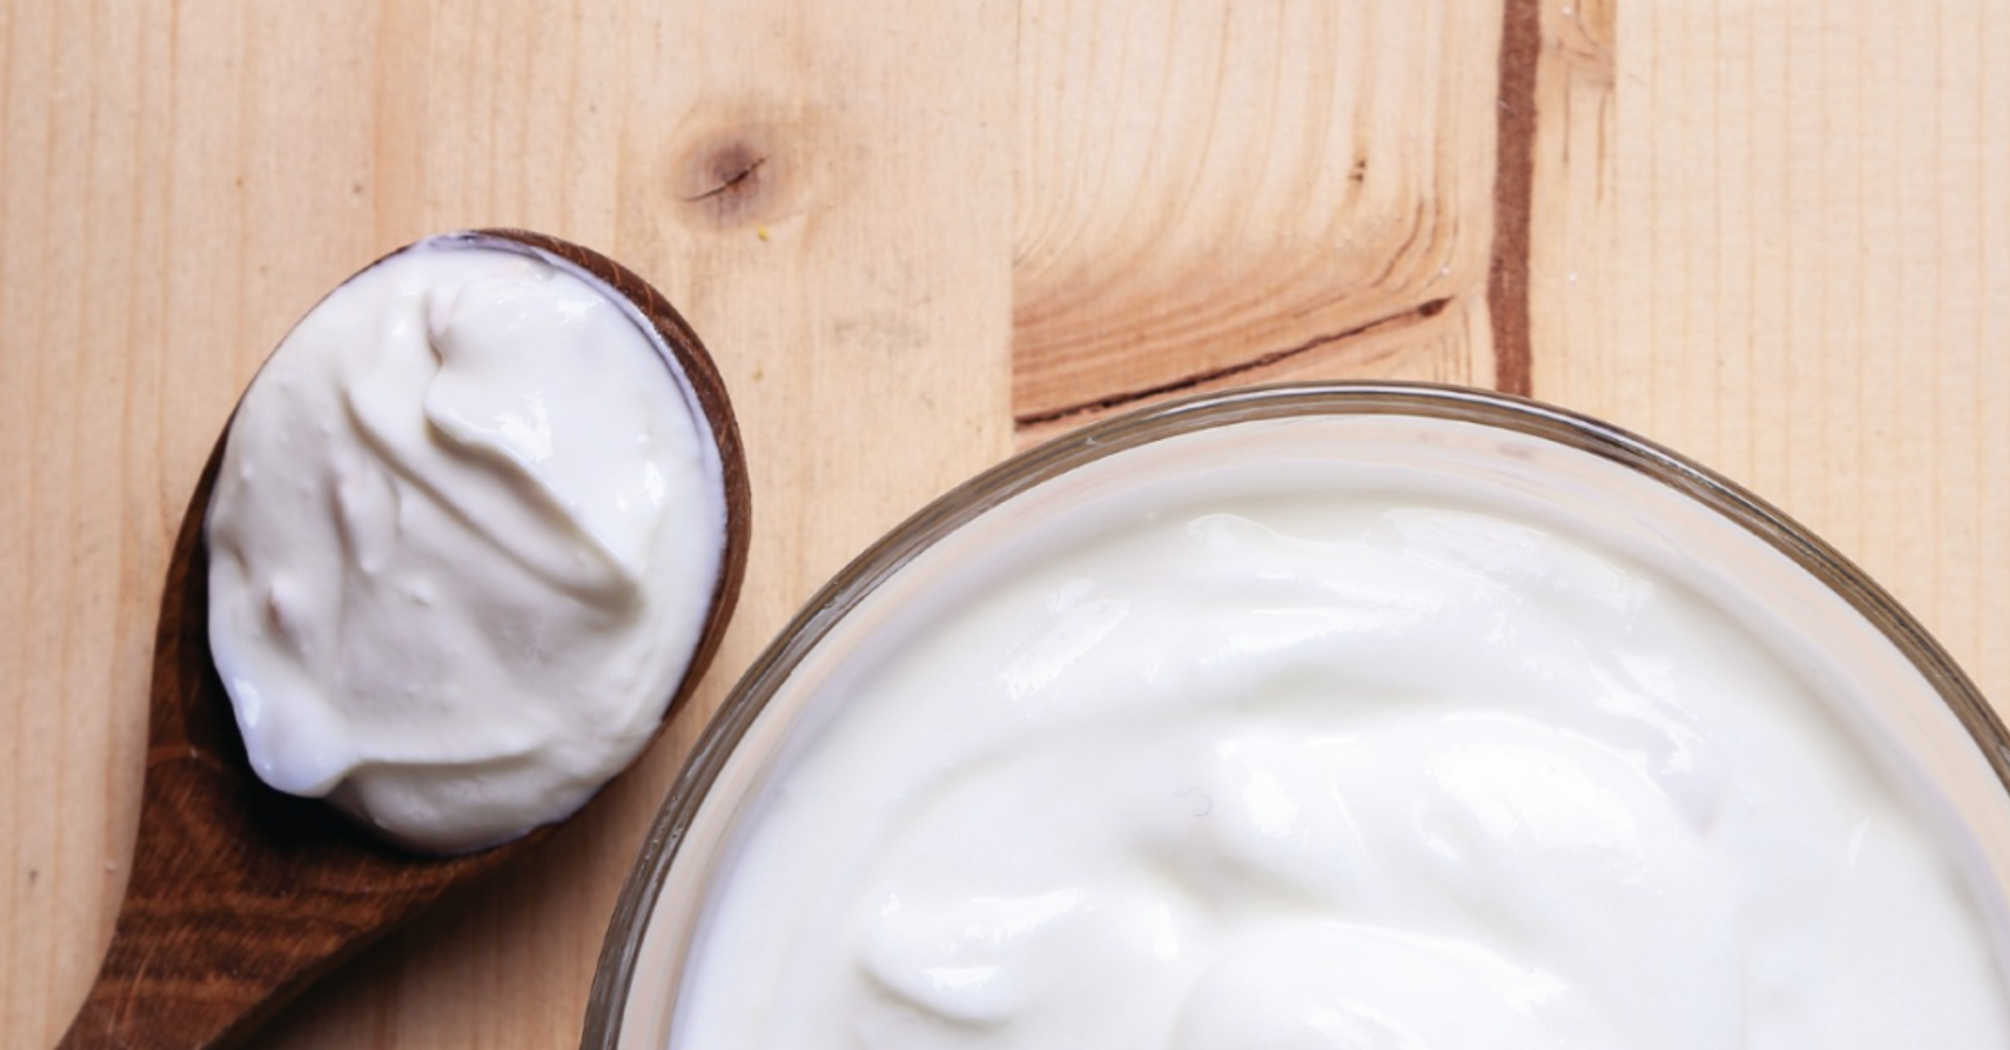 Вживання йогурту знижує ризик депресії та тривоги: результати дослідження